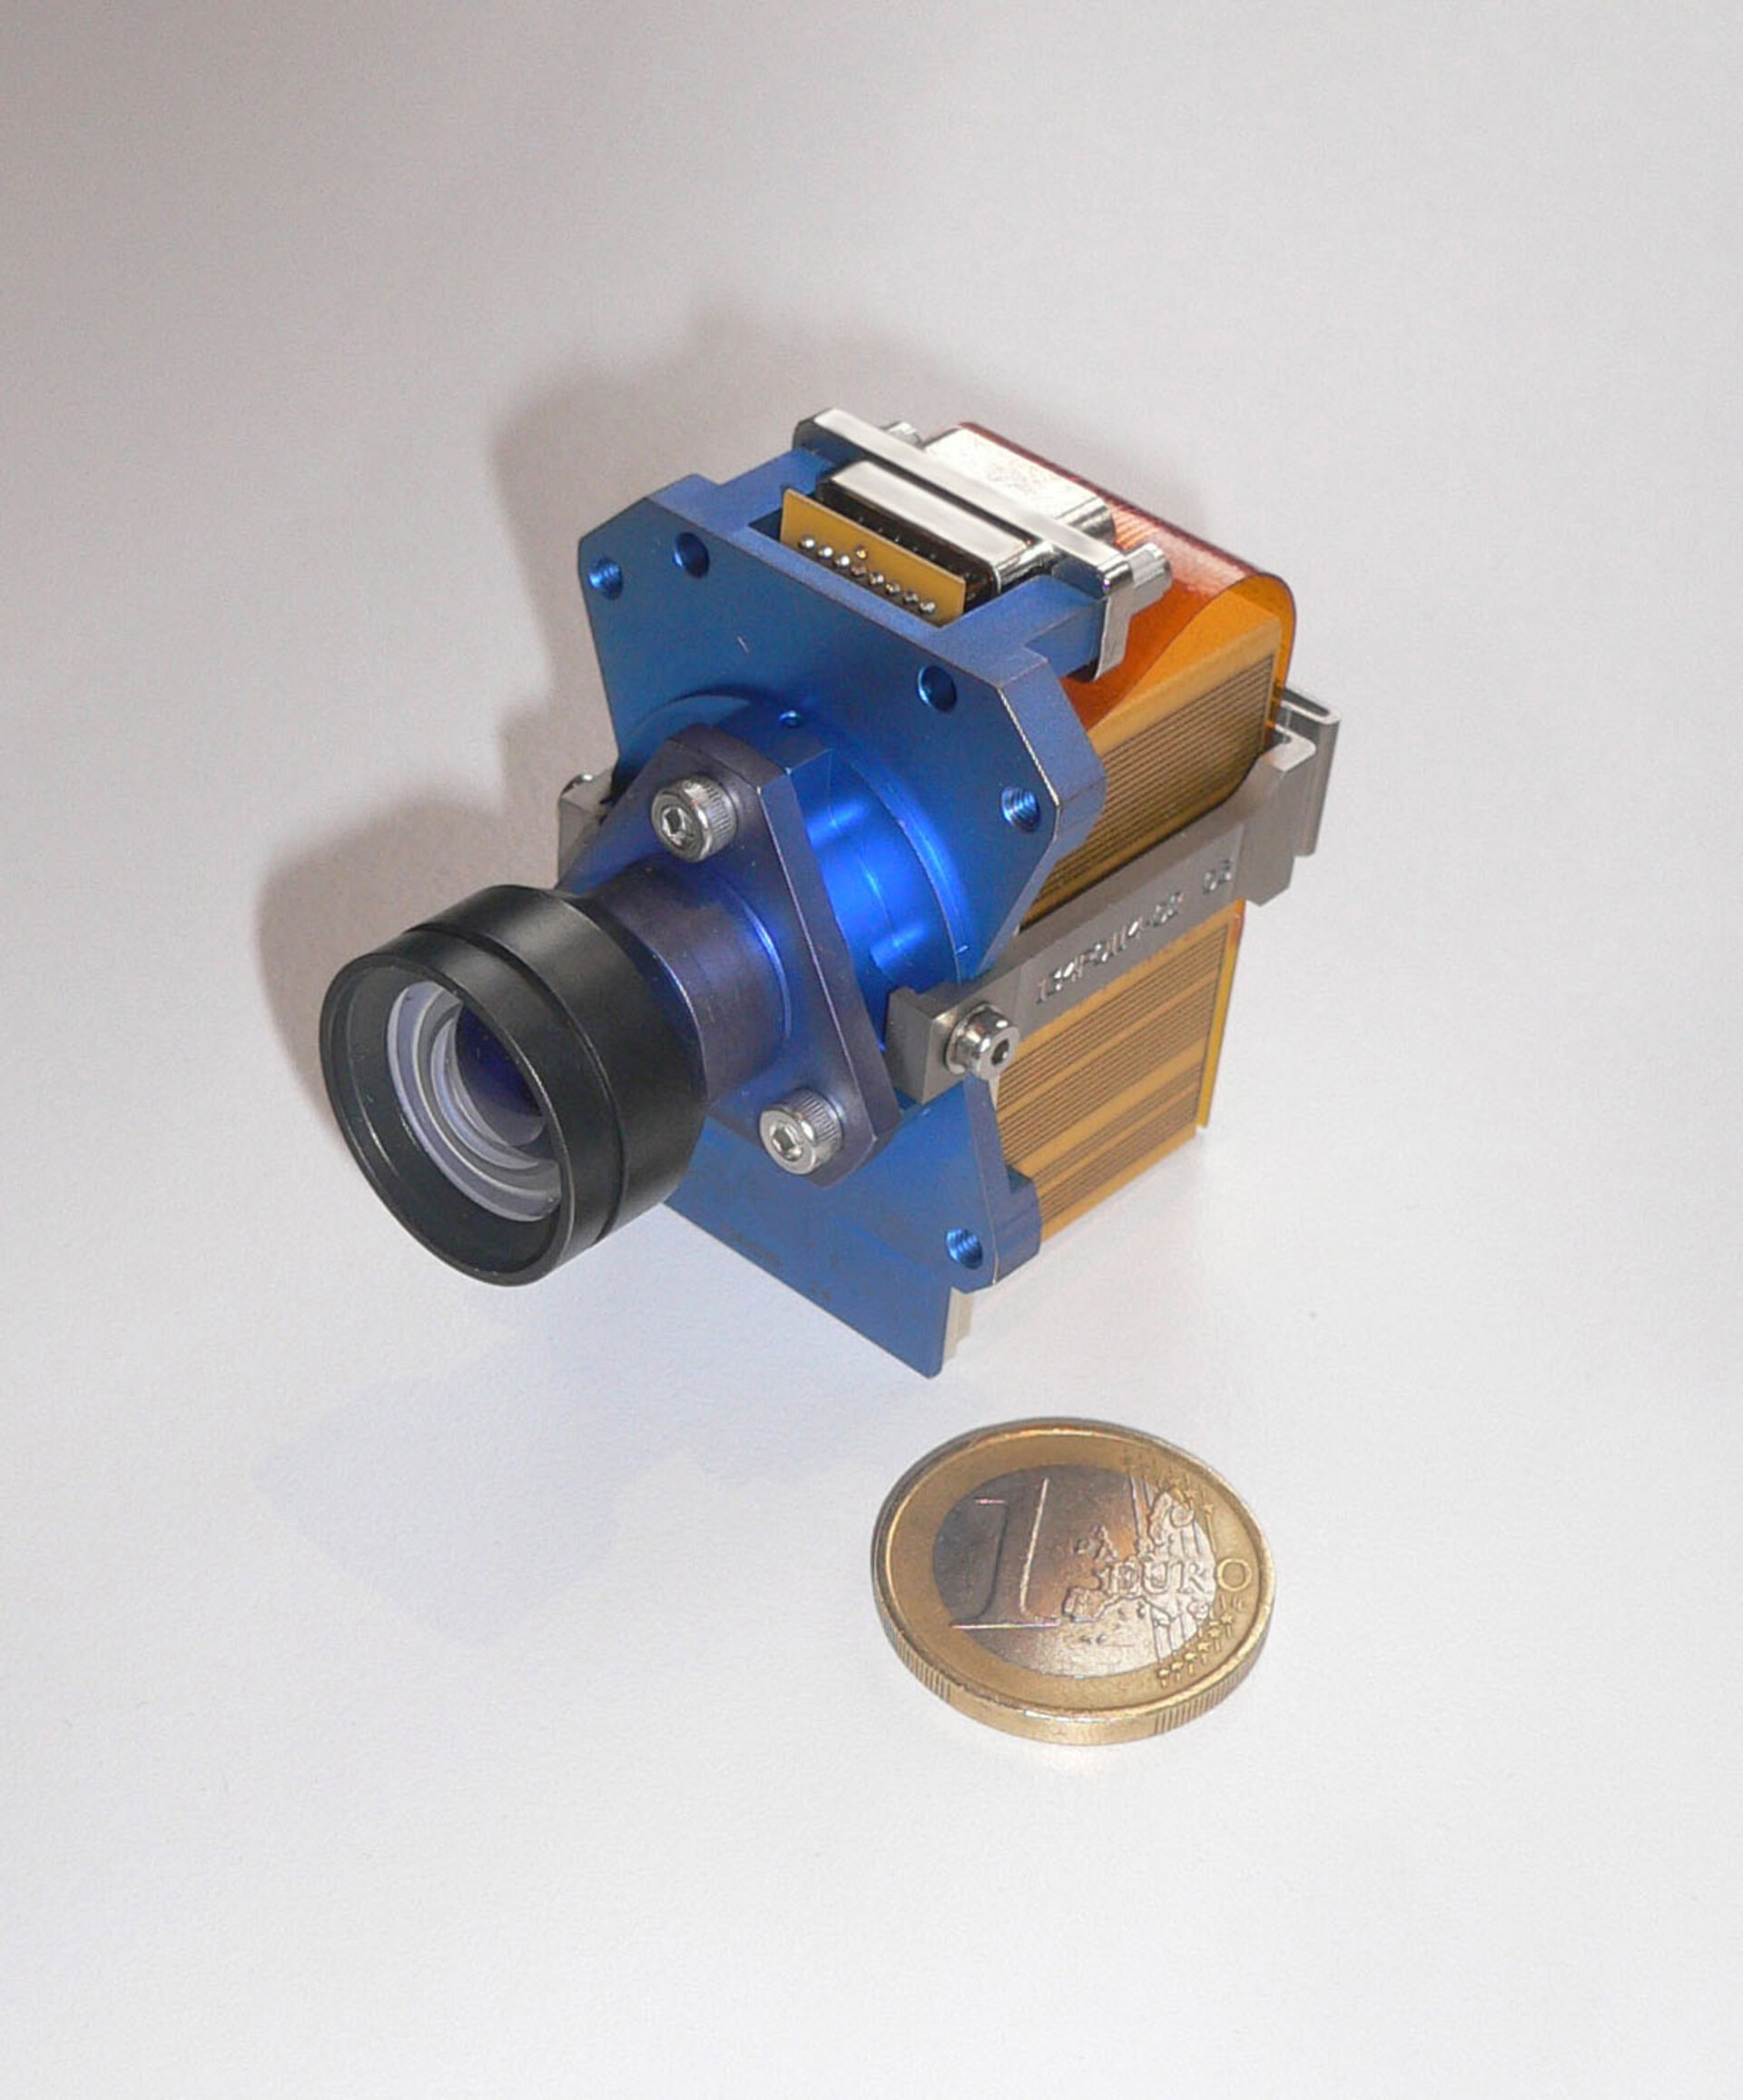 De kleine X-Cam camera aan boord van Proba 2